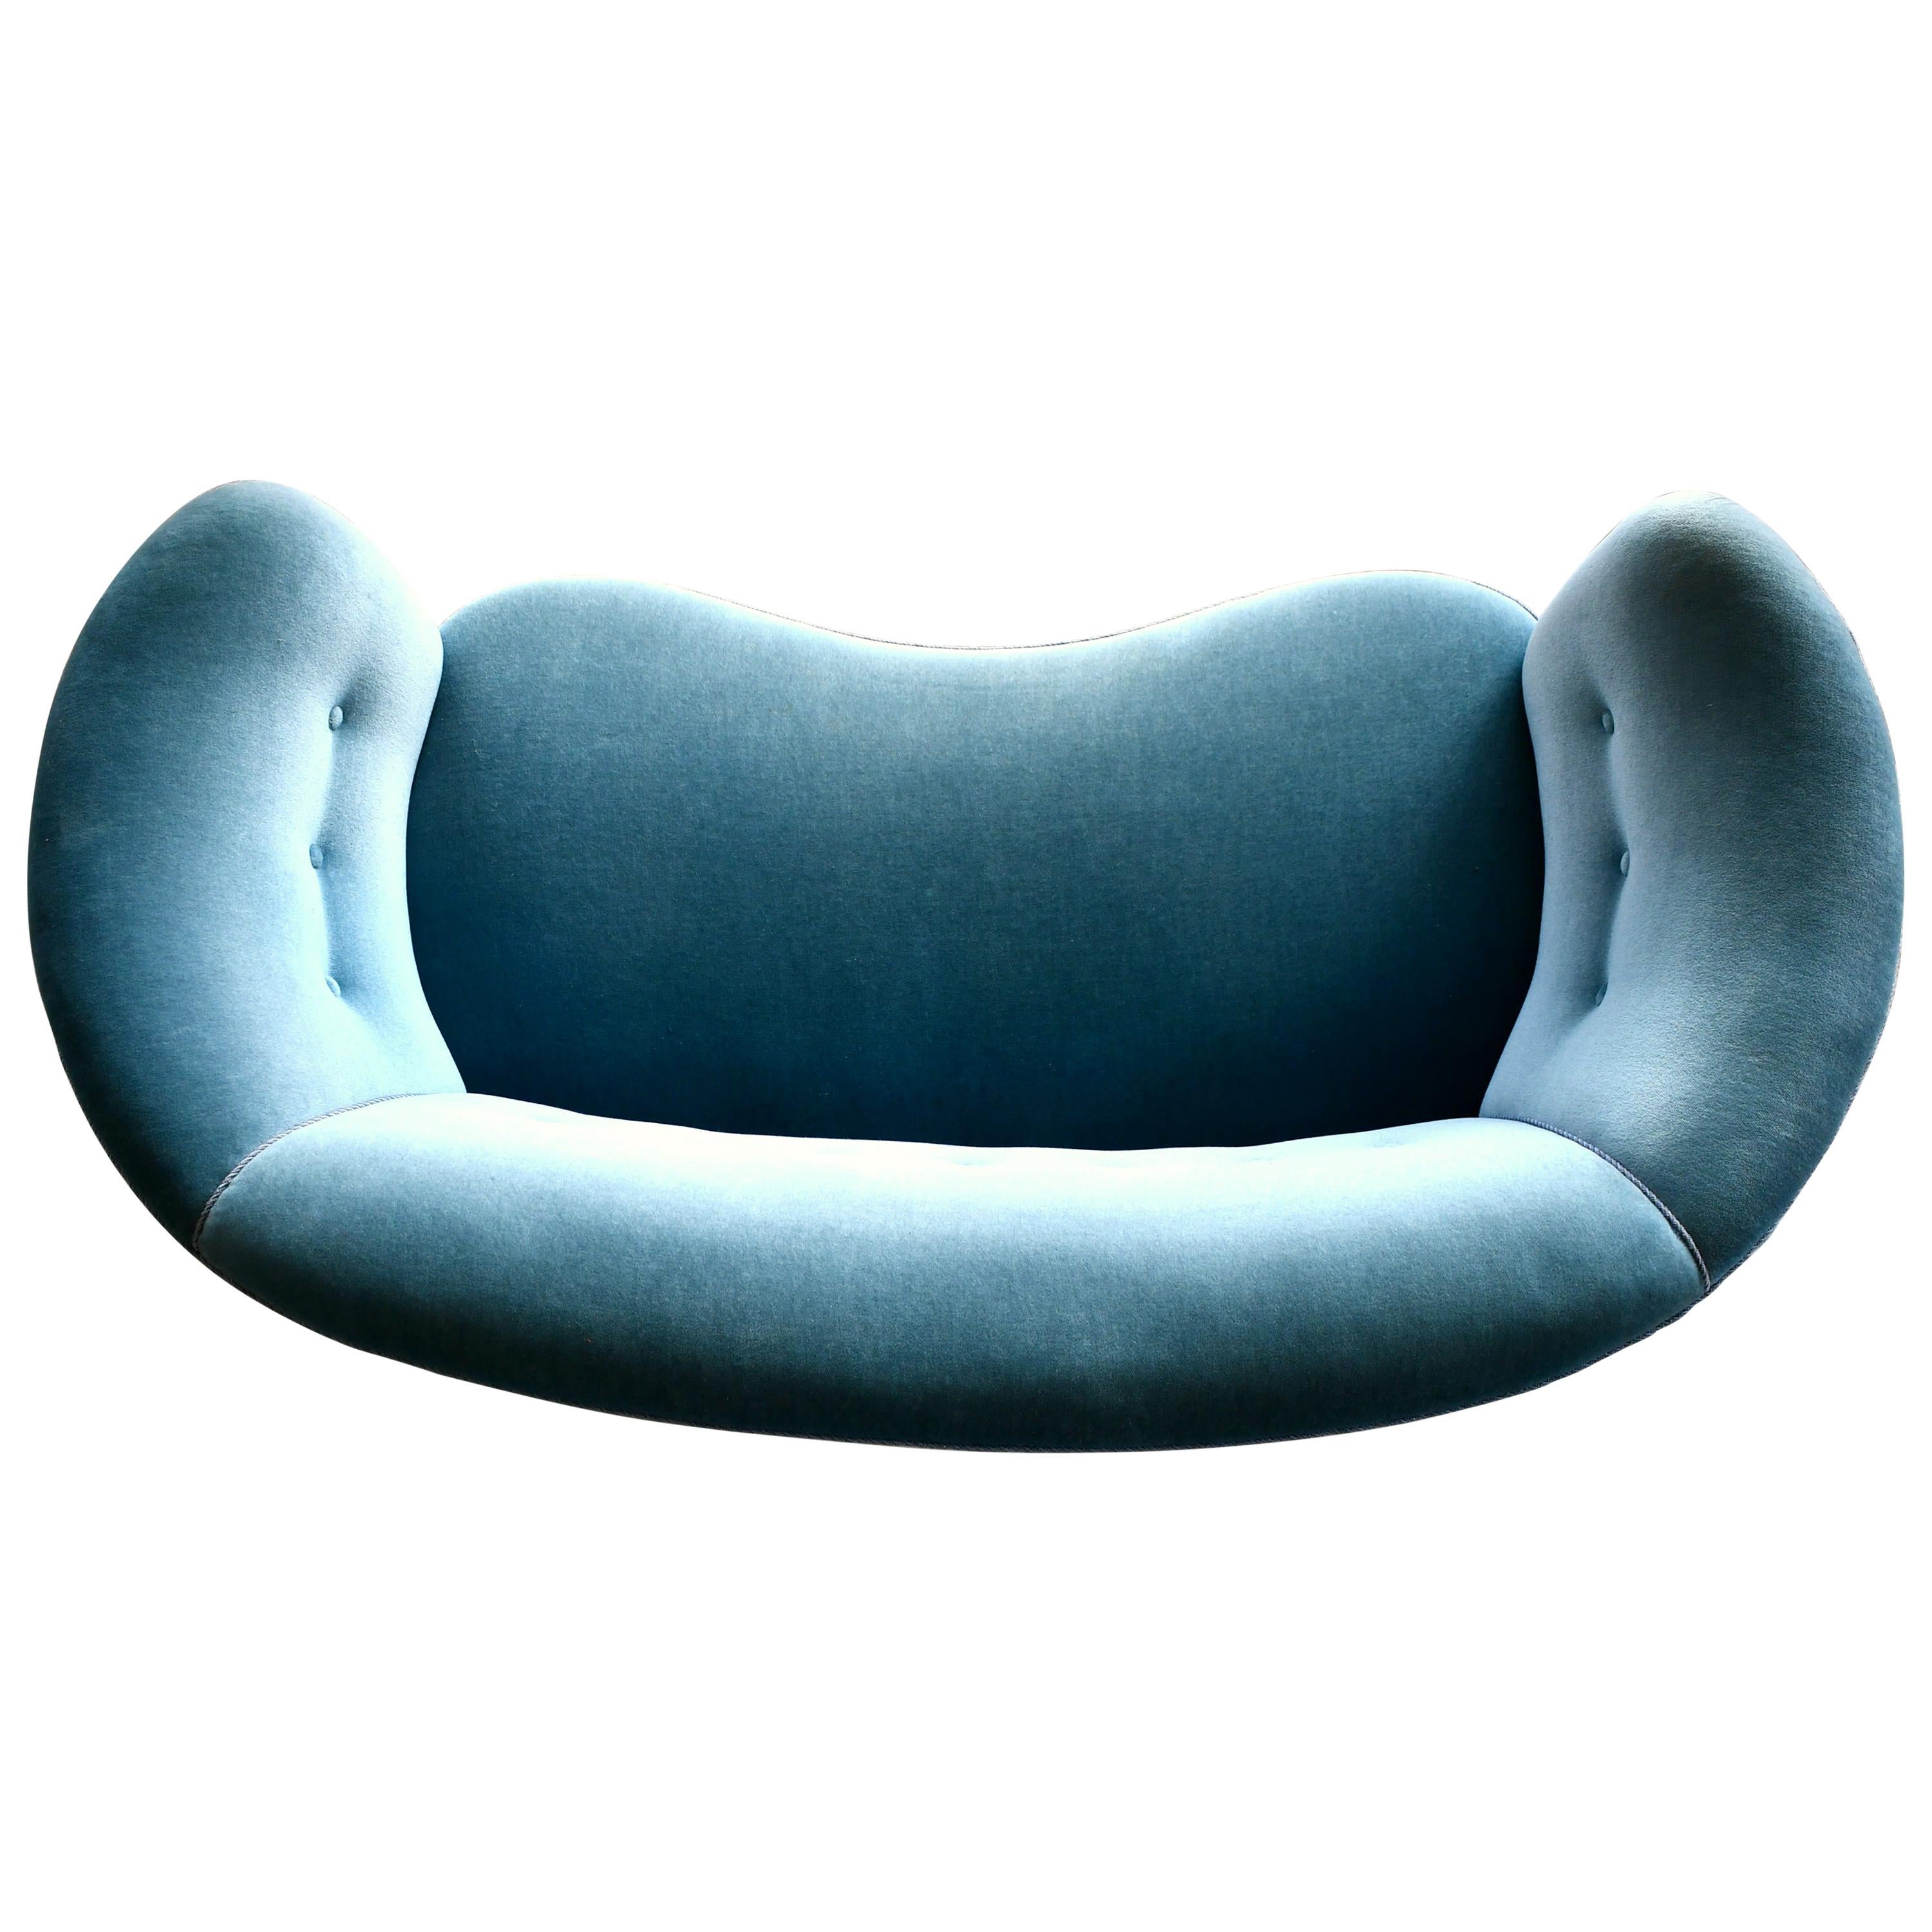 Danish 1940s Boesen Style Banana Form Curved Sofa or Loveseat in Teal Velvet